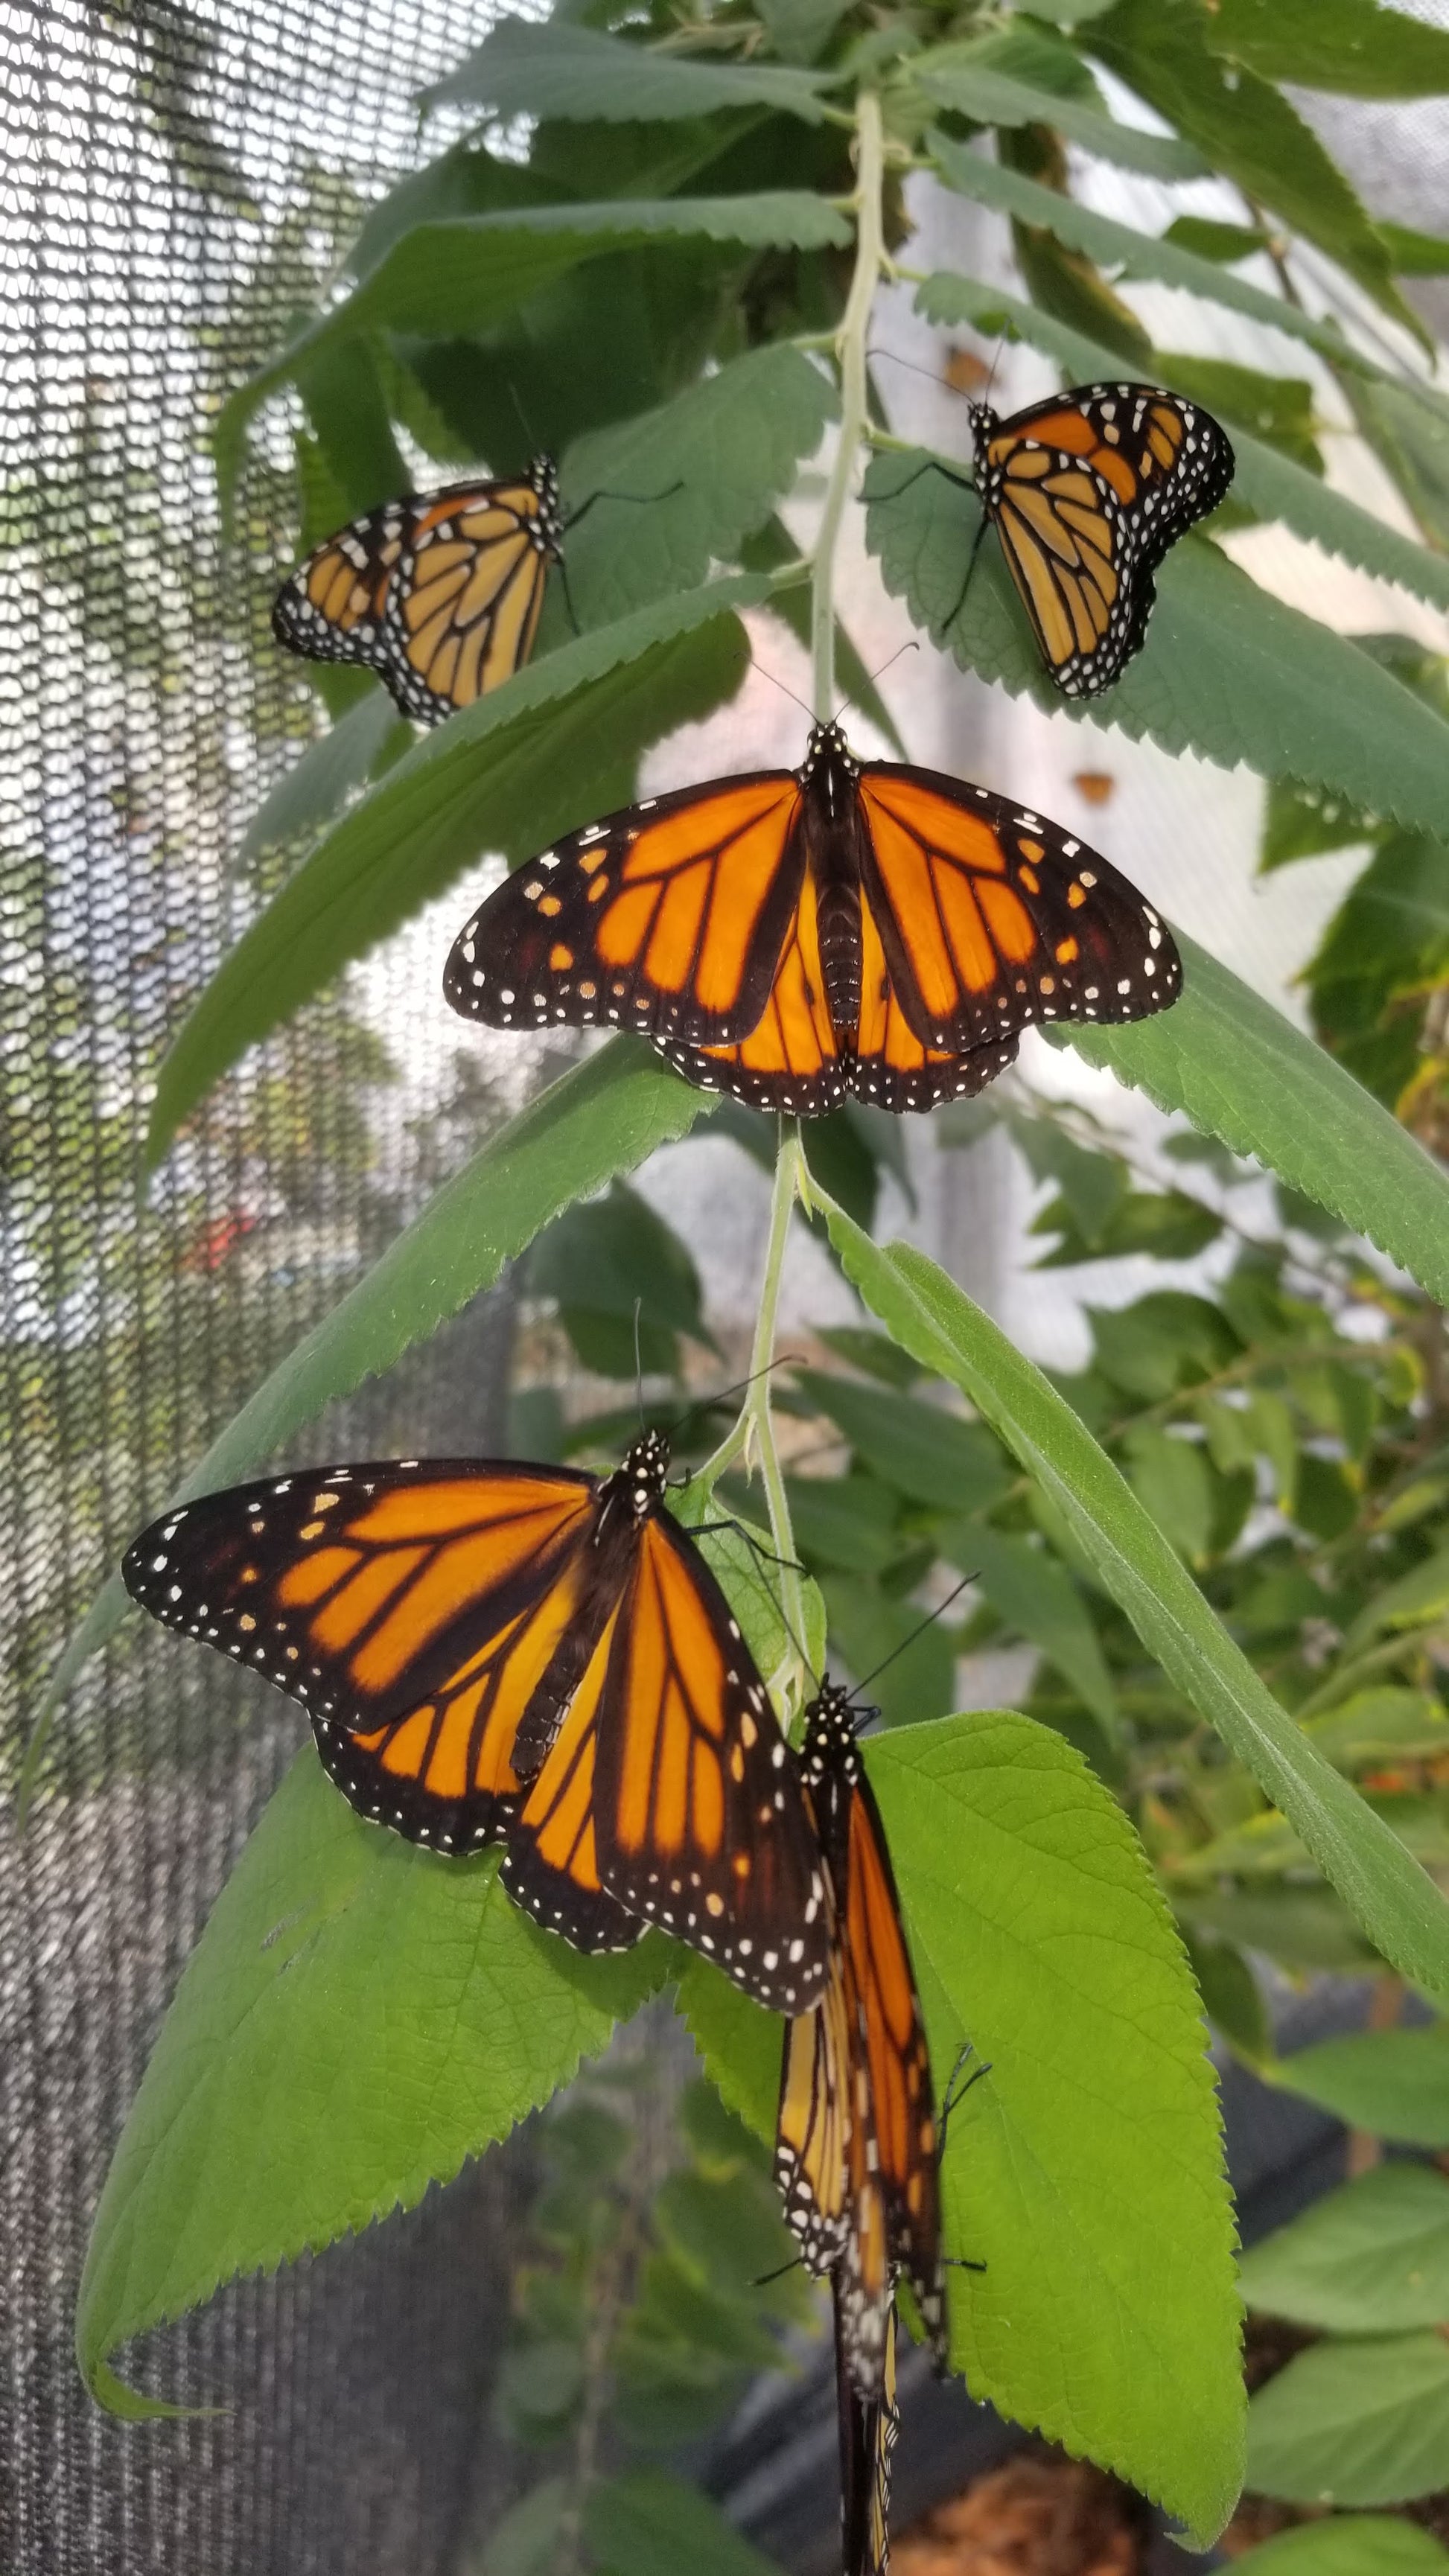 Monarch Butterfly Milkweed Seed Garden Kit, Pollinator Garden Kit 